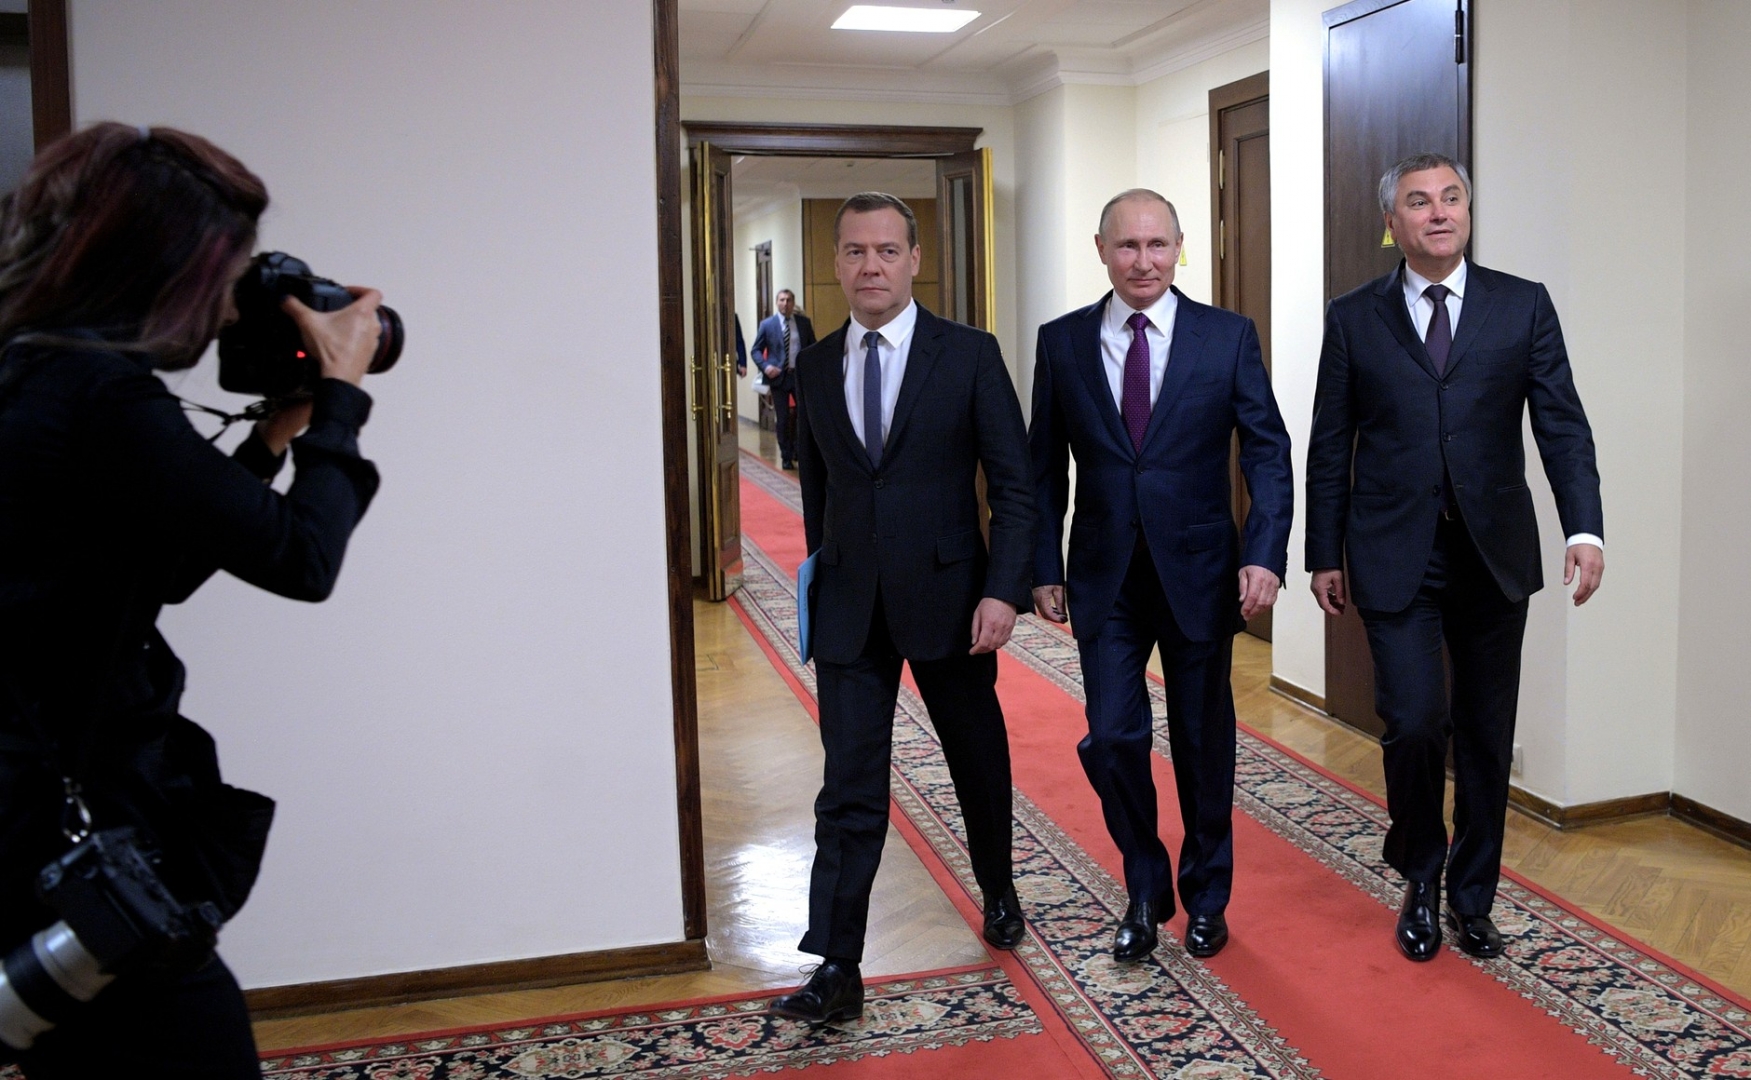 Путин и медведев фото вместе рост